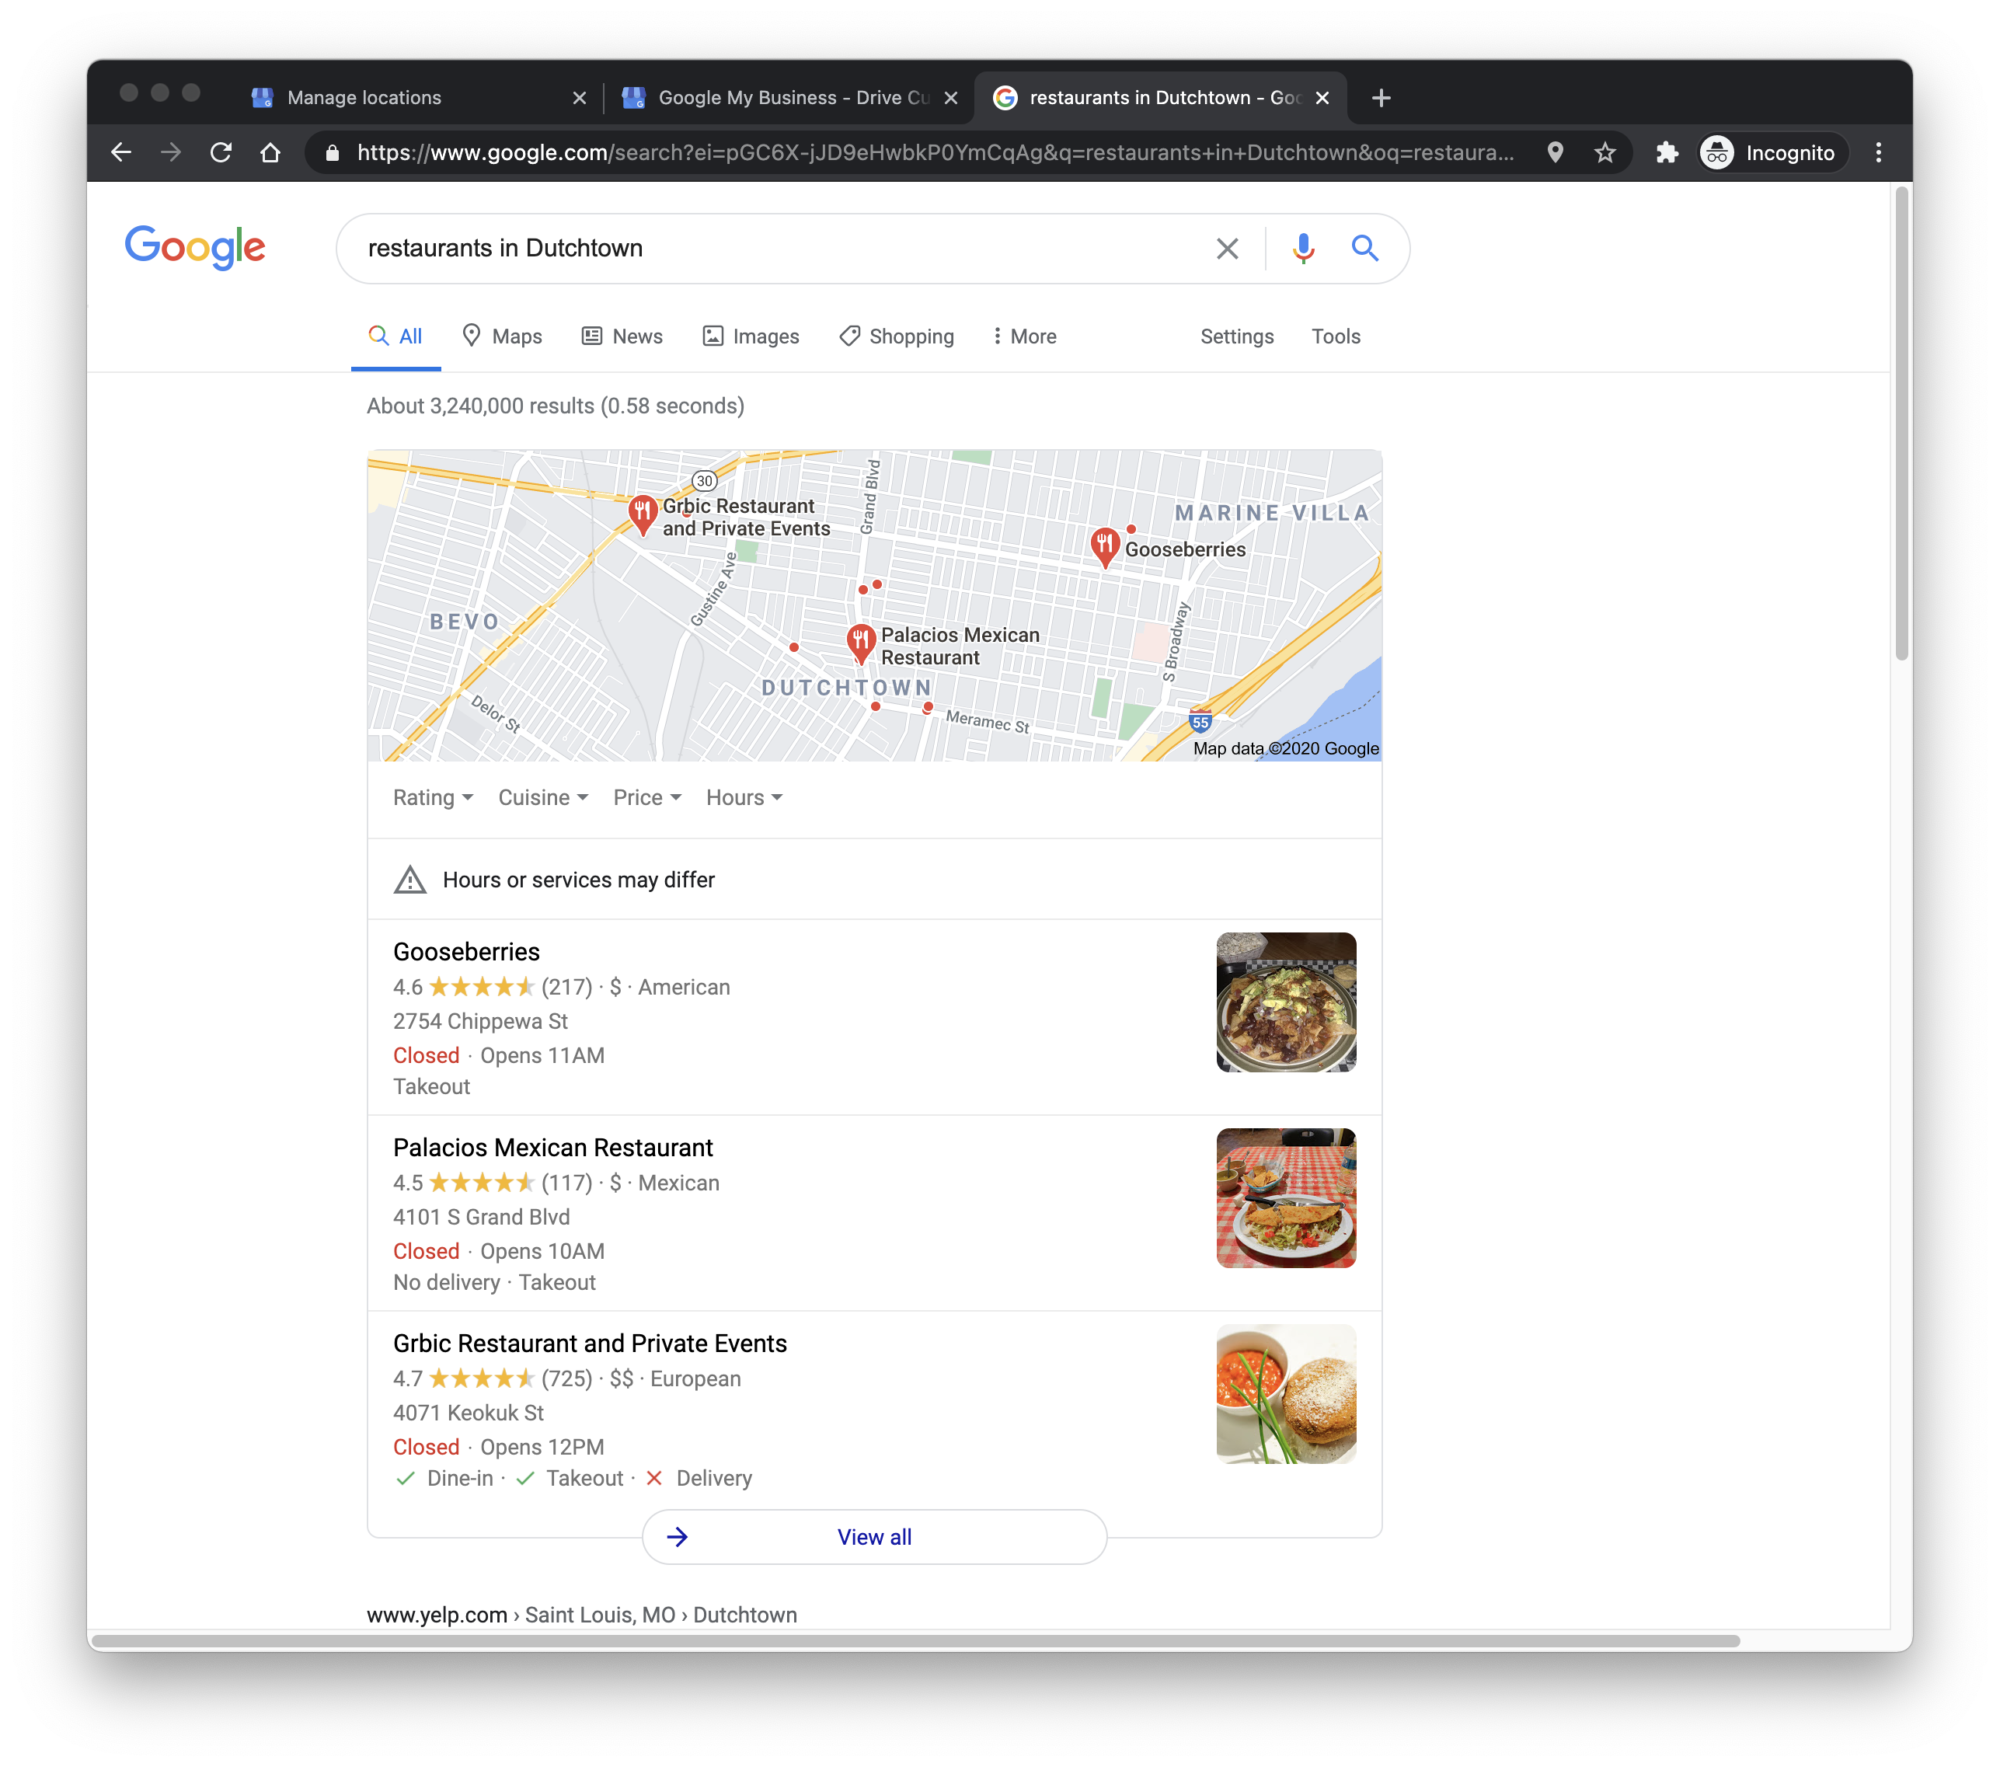 Google results for restaurants in Dutchtown.